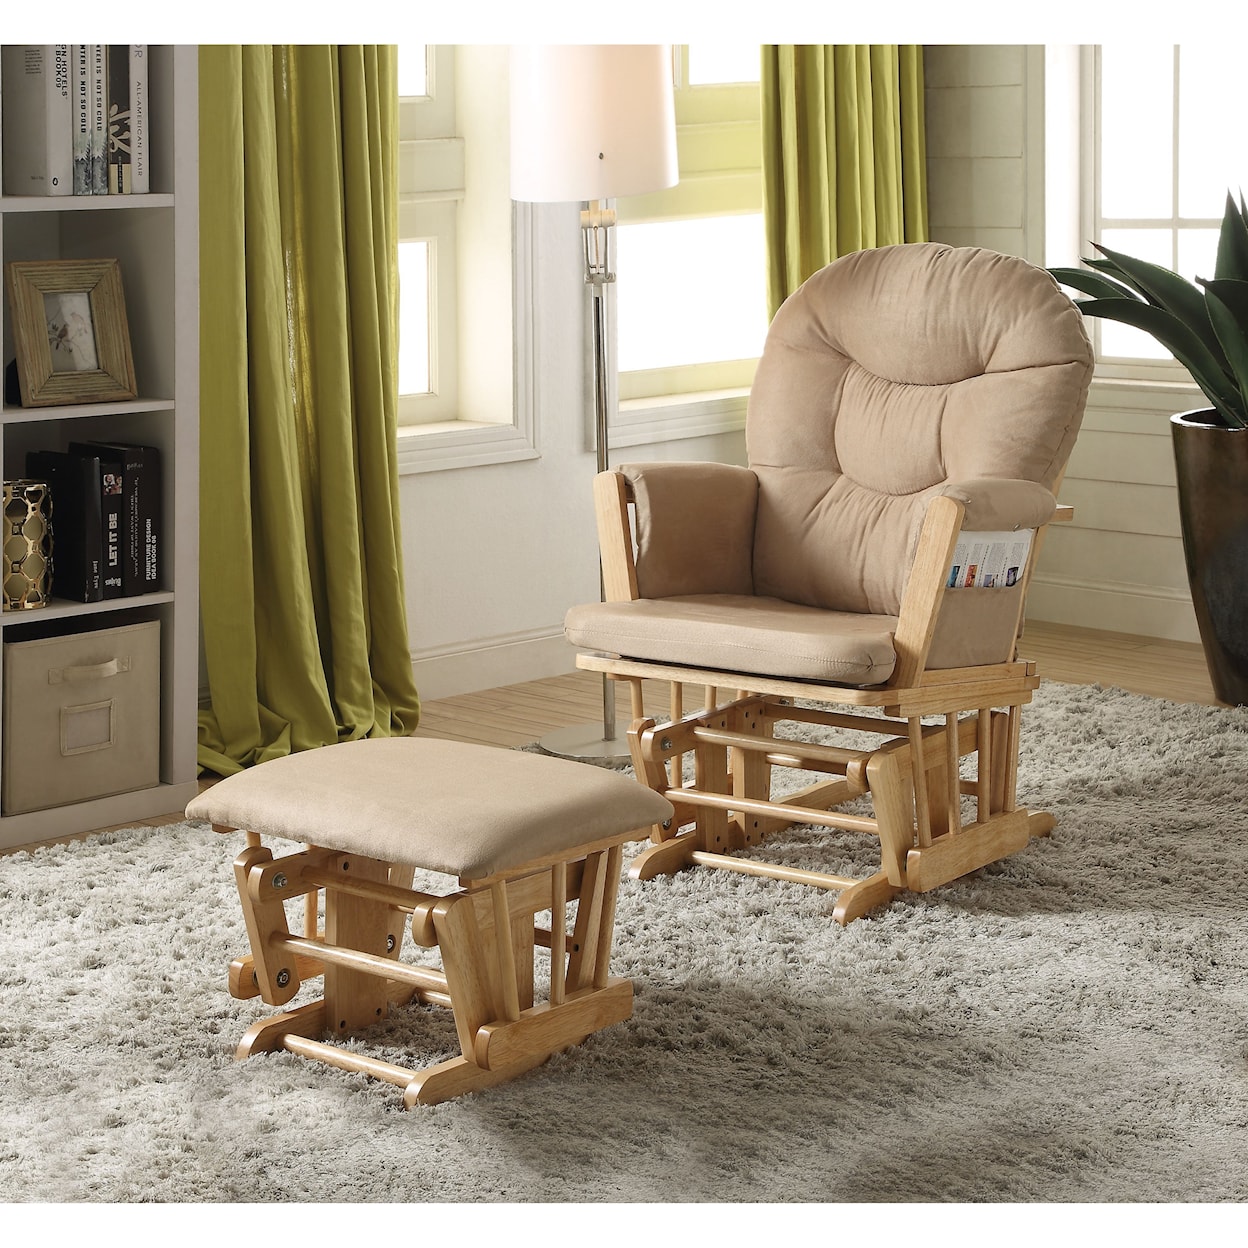 Acme Furniture Rehan Glider Chair & Ottoman